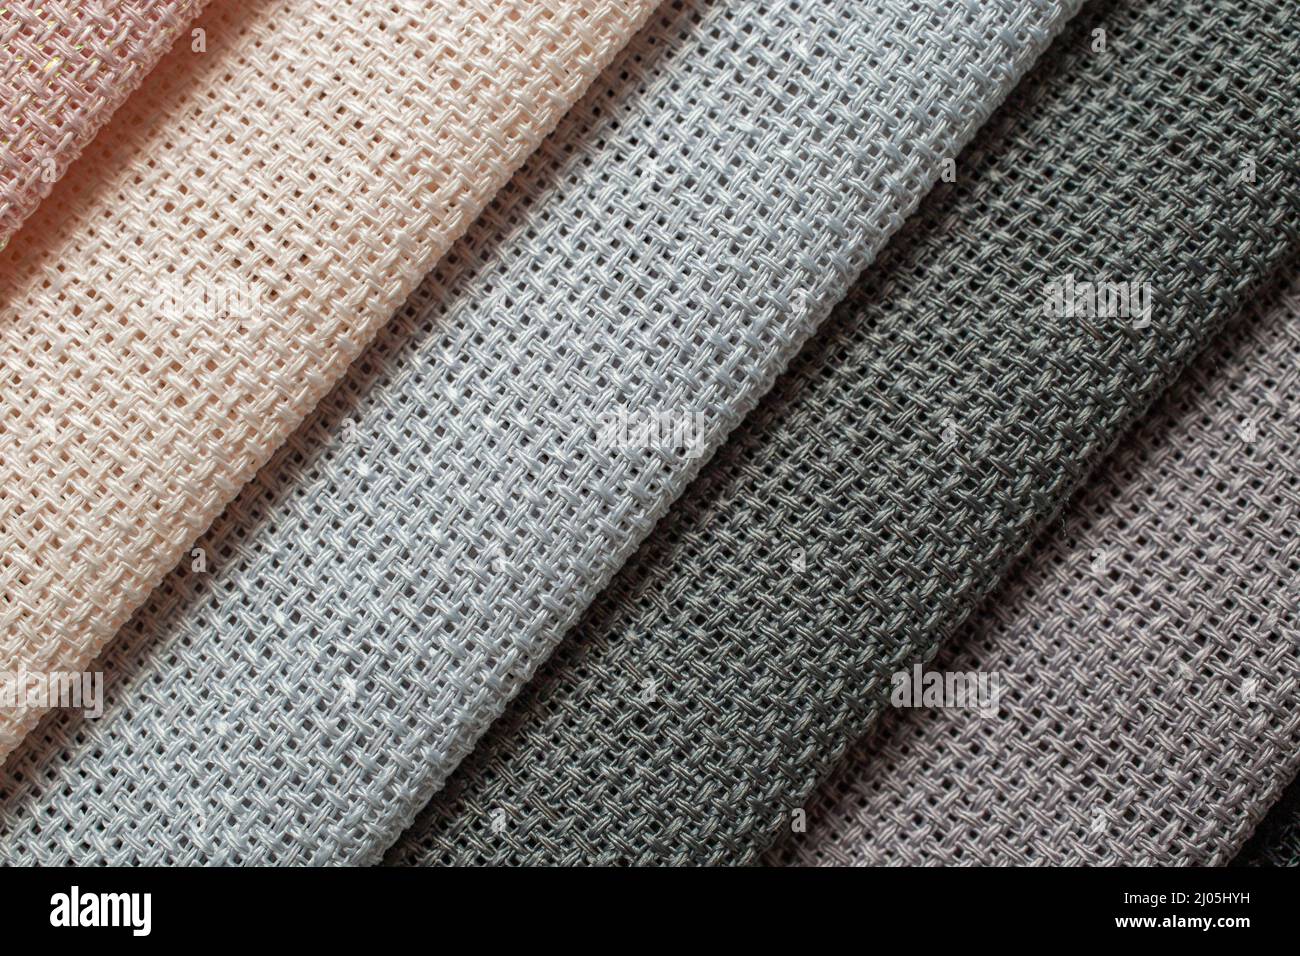 palette de couleurs décolorées, nuance de texture de tissu, prise de vue macro Banque D'Images